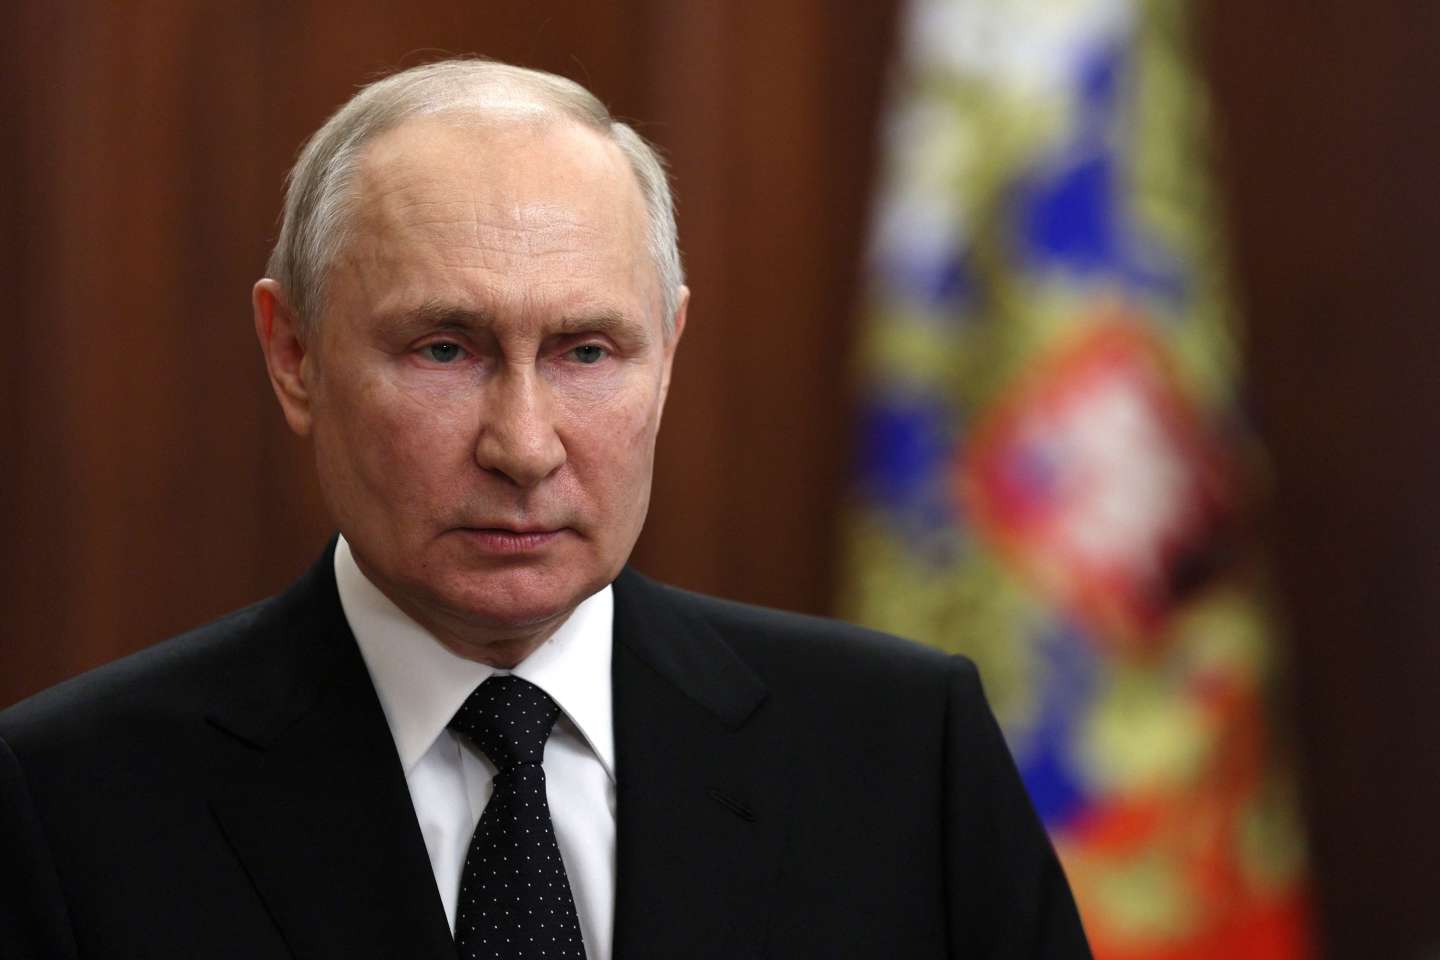 Rébellion de Wagner : Vladimir Poutine évite le bain de sang au prix d’un affaiblissement de son autorité